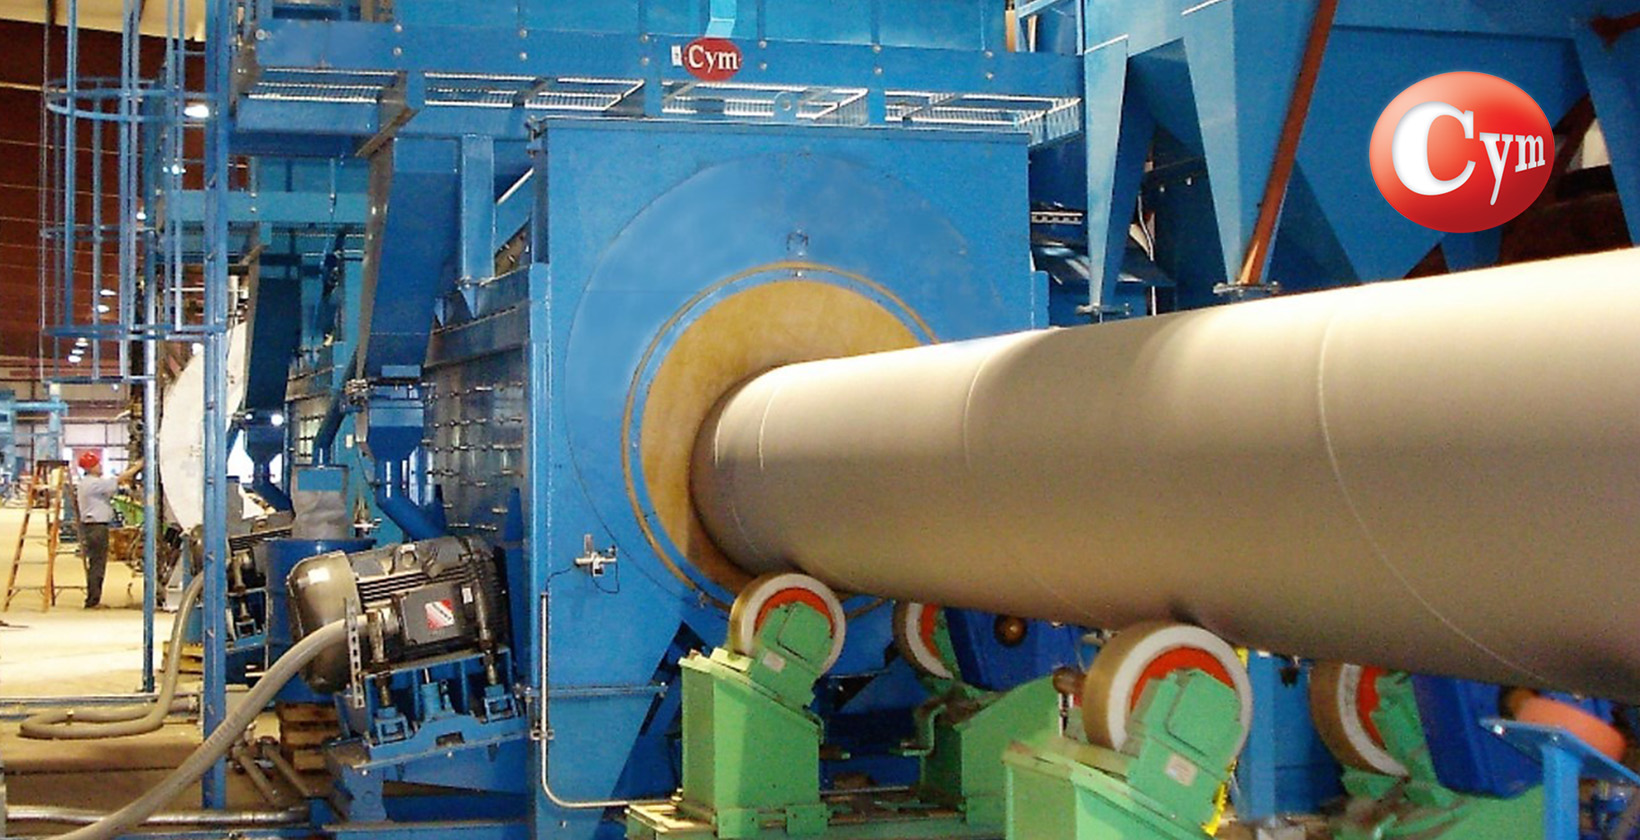 equipo de granallado para aplicacion de revestimiento en tubos de gran diametro como oleoductos, acueductos y gasoductos